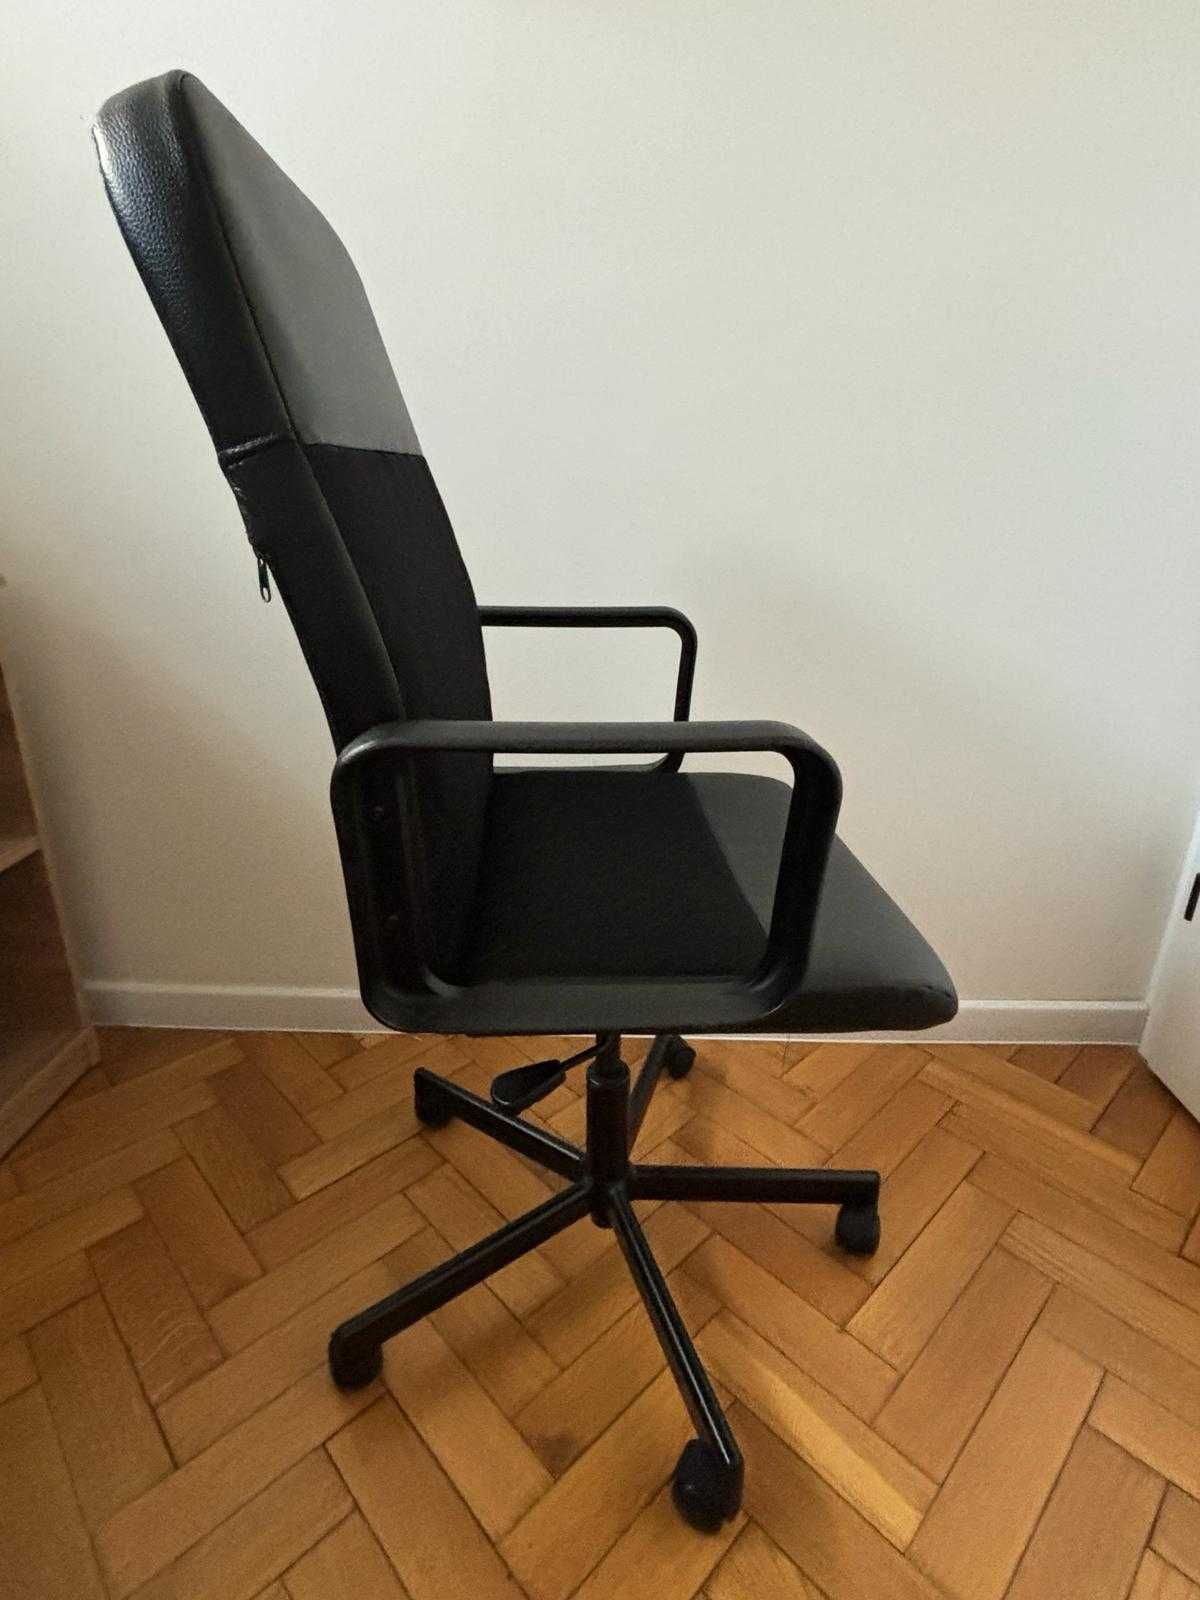 Krzesło obrotowe marki Ikea, model Renberget